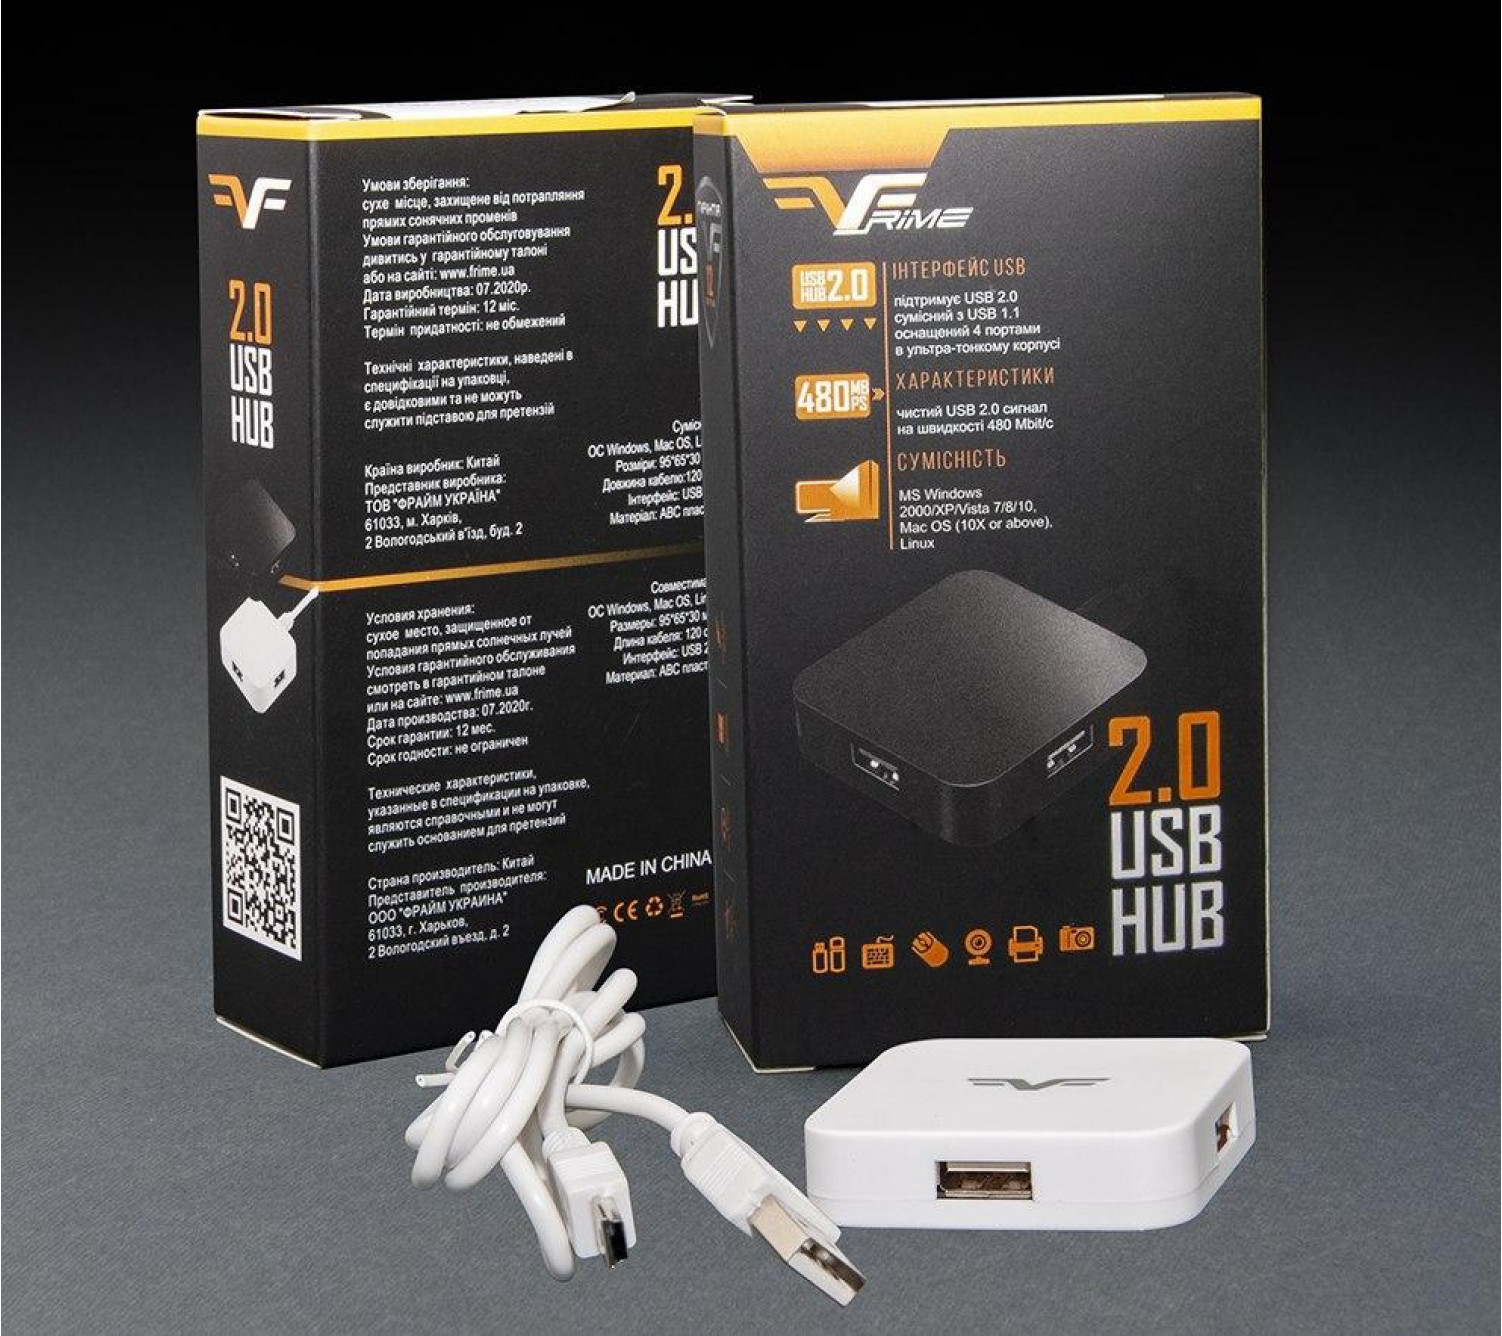 USB-хаб Frime 4-х портовый 2.0 White (FH-20021)